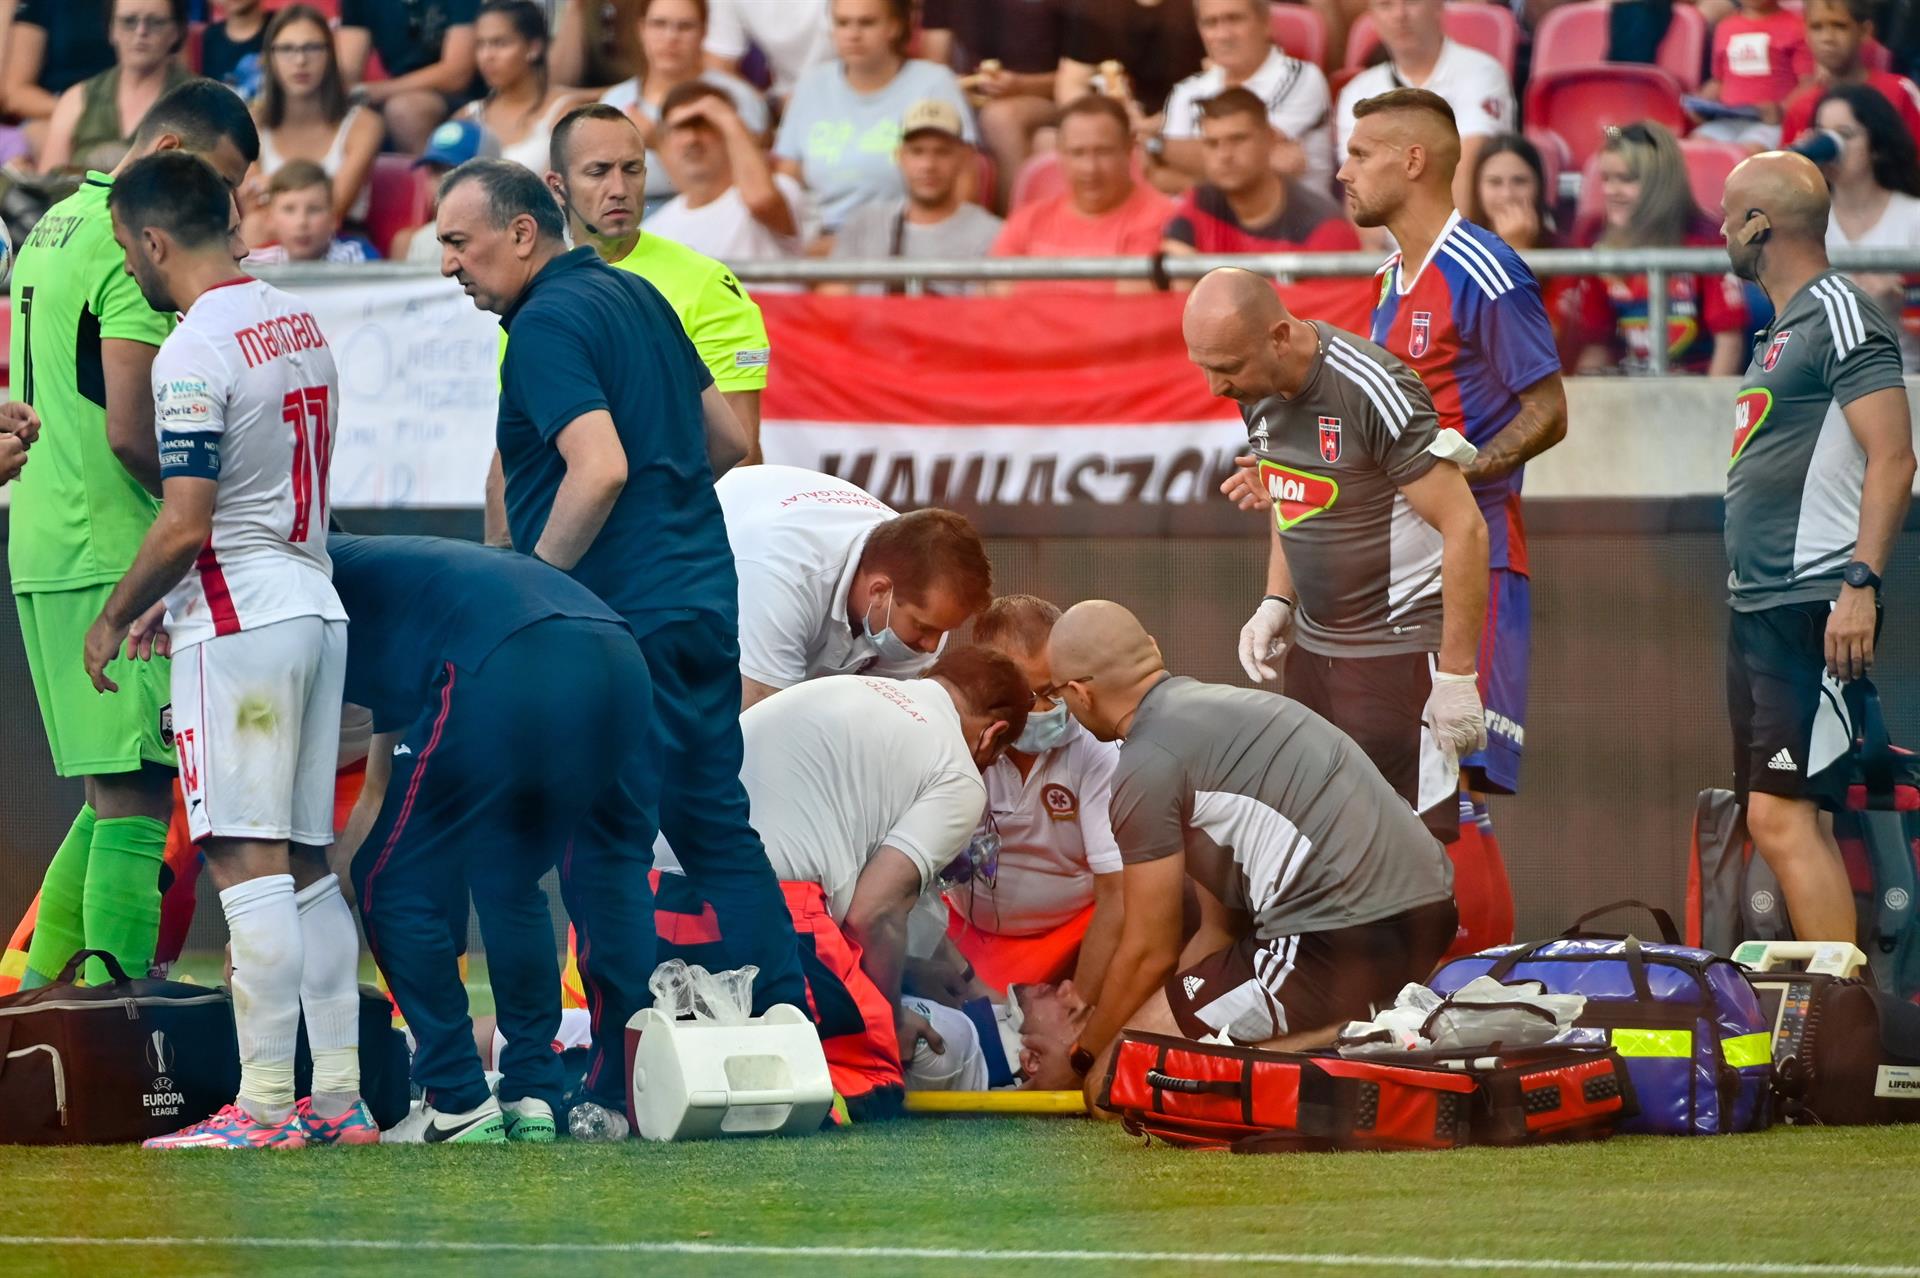 Un jugador de fútbol fue hospitalizado tras sufrir un impresionante golpe en la cabeza